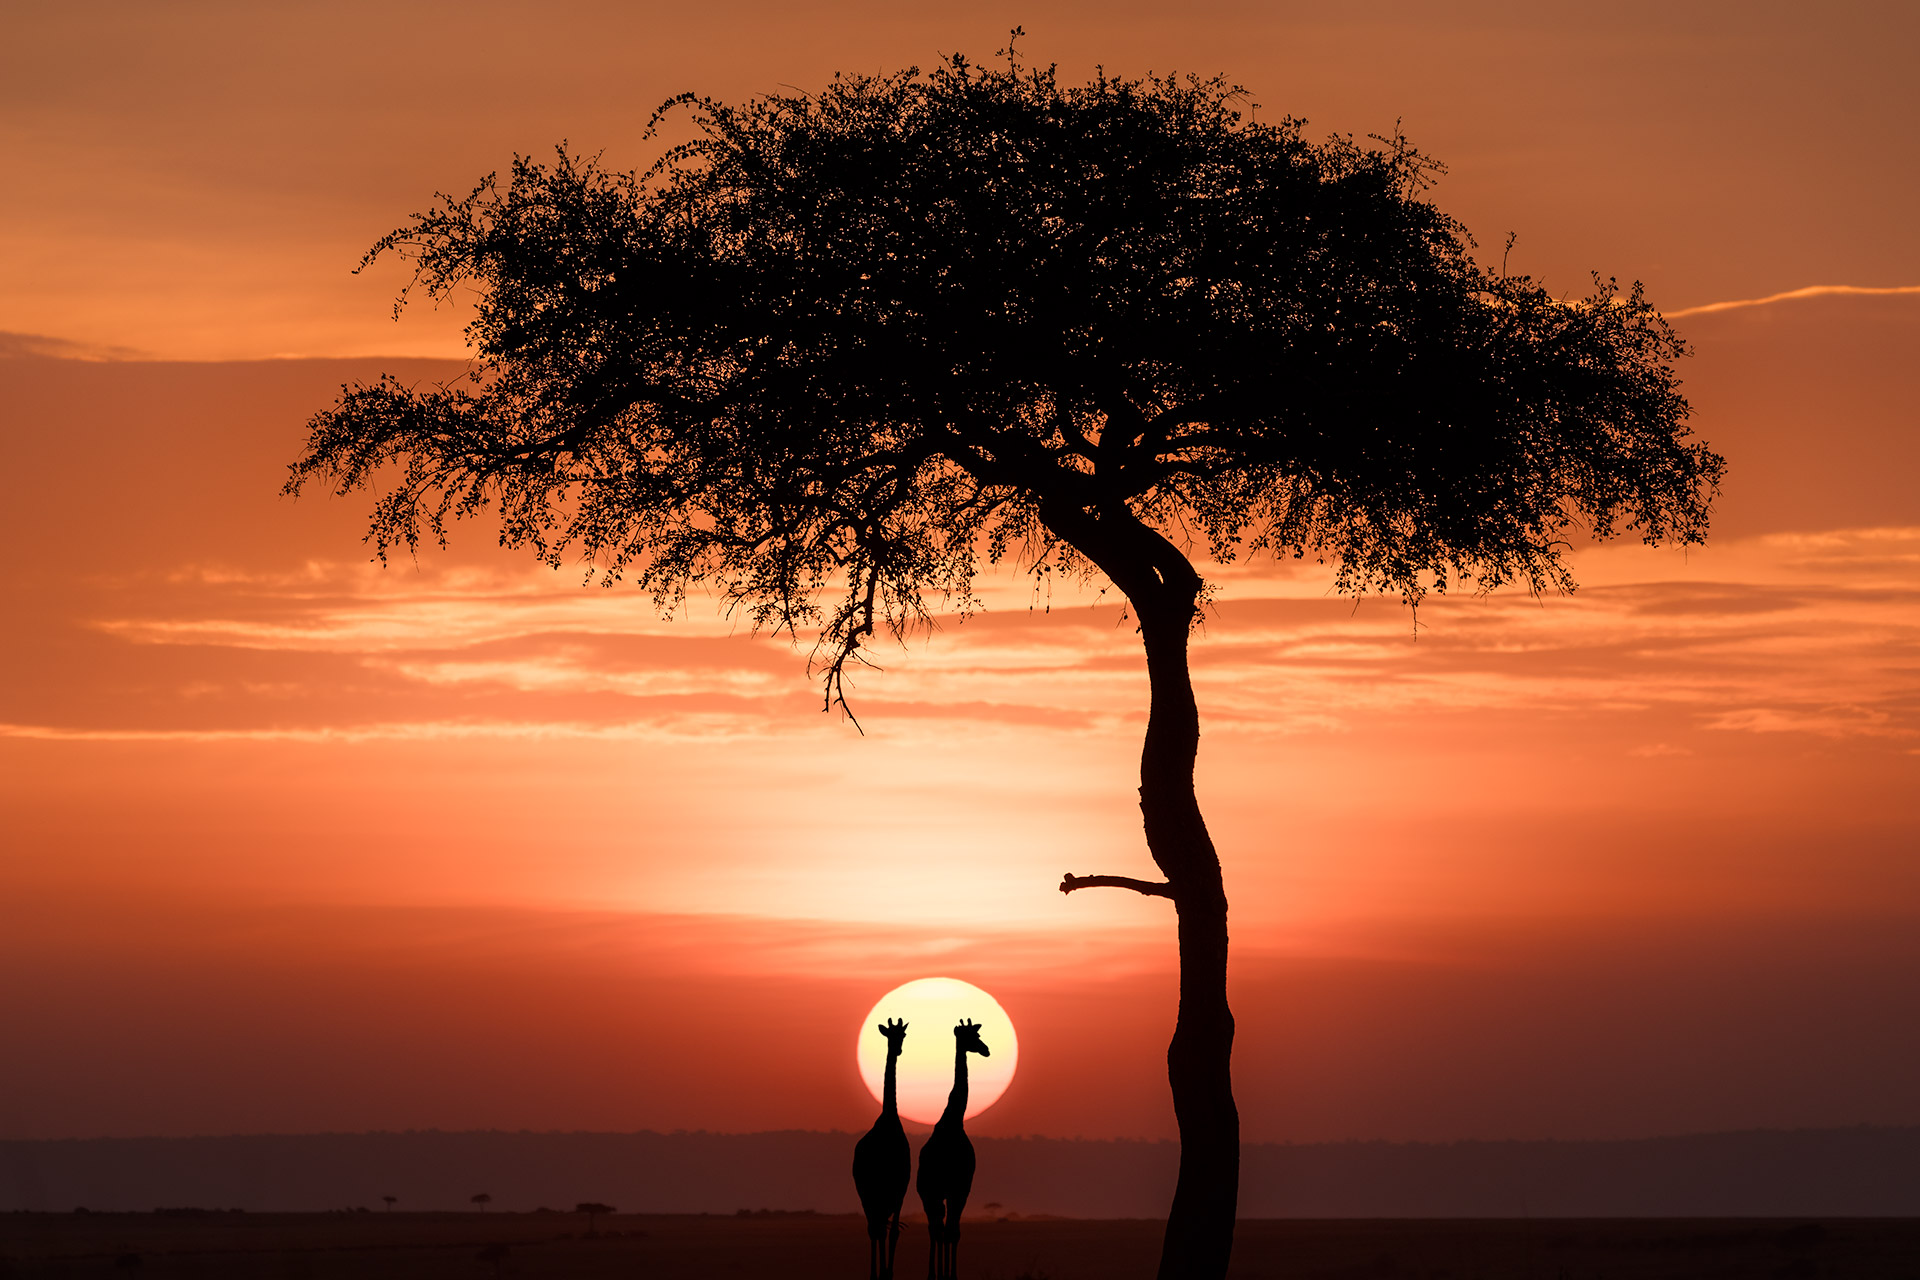 Giraffen und Baum im Sonnenuntergang in der Massai Mara auf einer Fotoreise fotografiert.